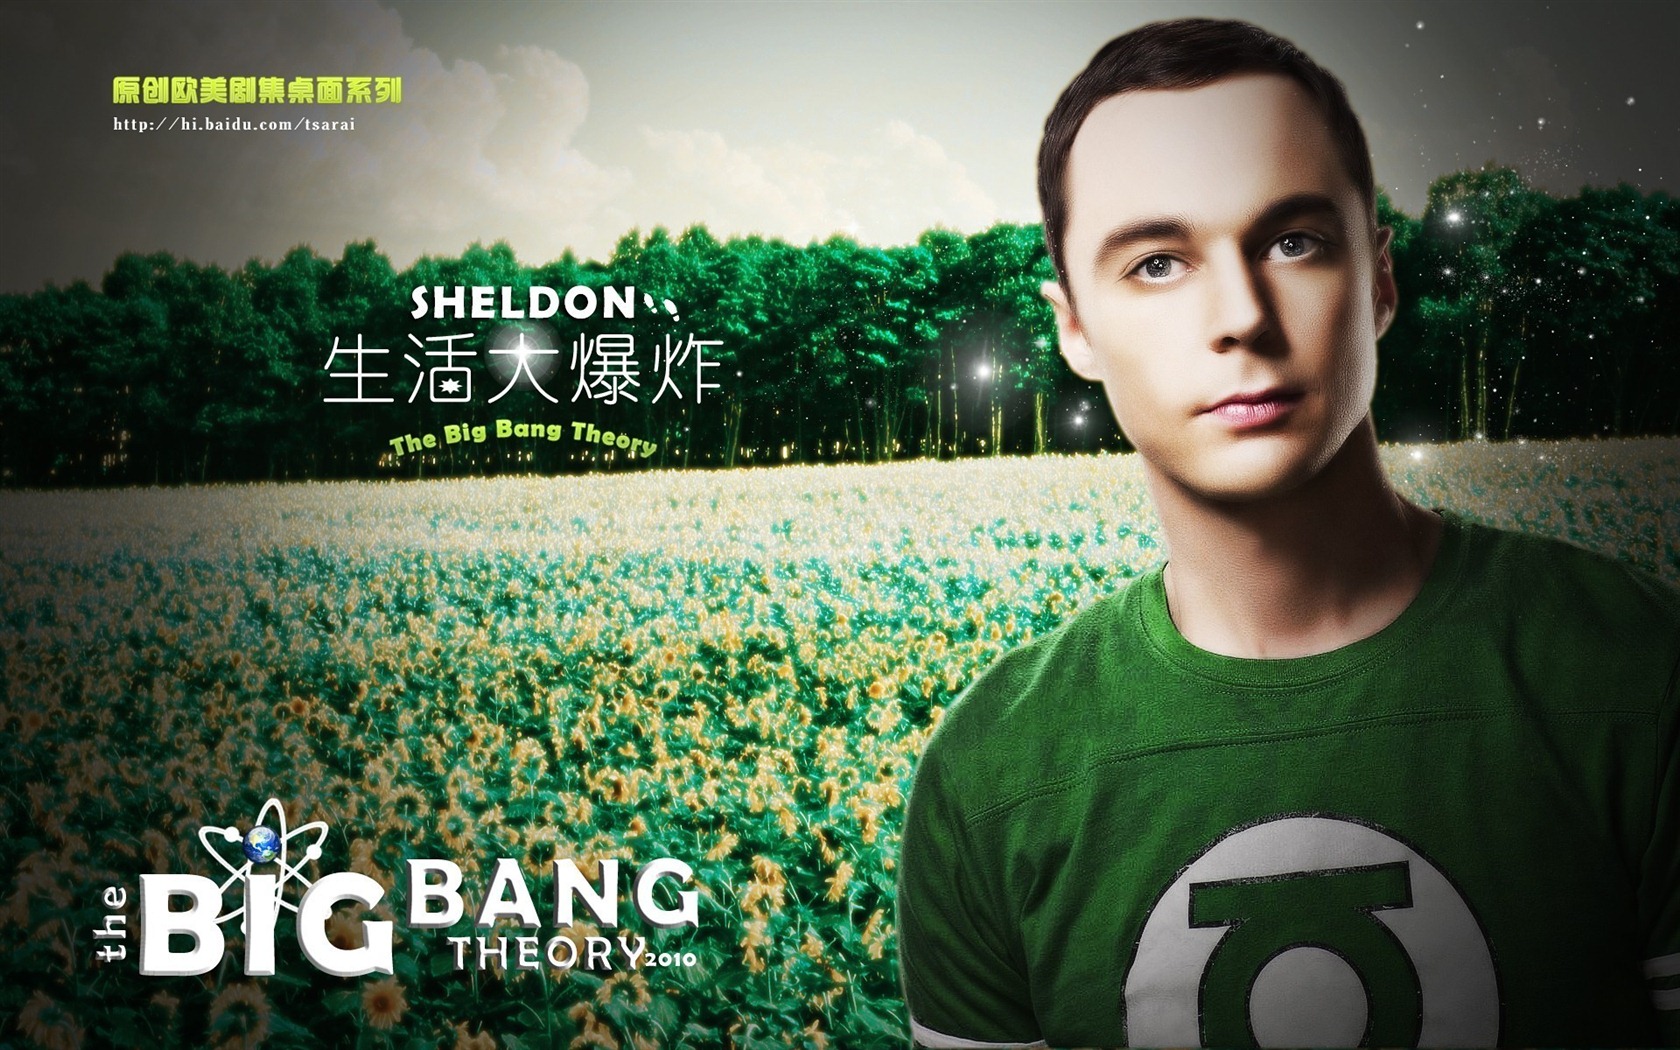 The Big Bang Theory 生活大爆炸 电视剧高清壁纸16 - 1680x1050